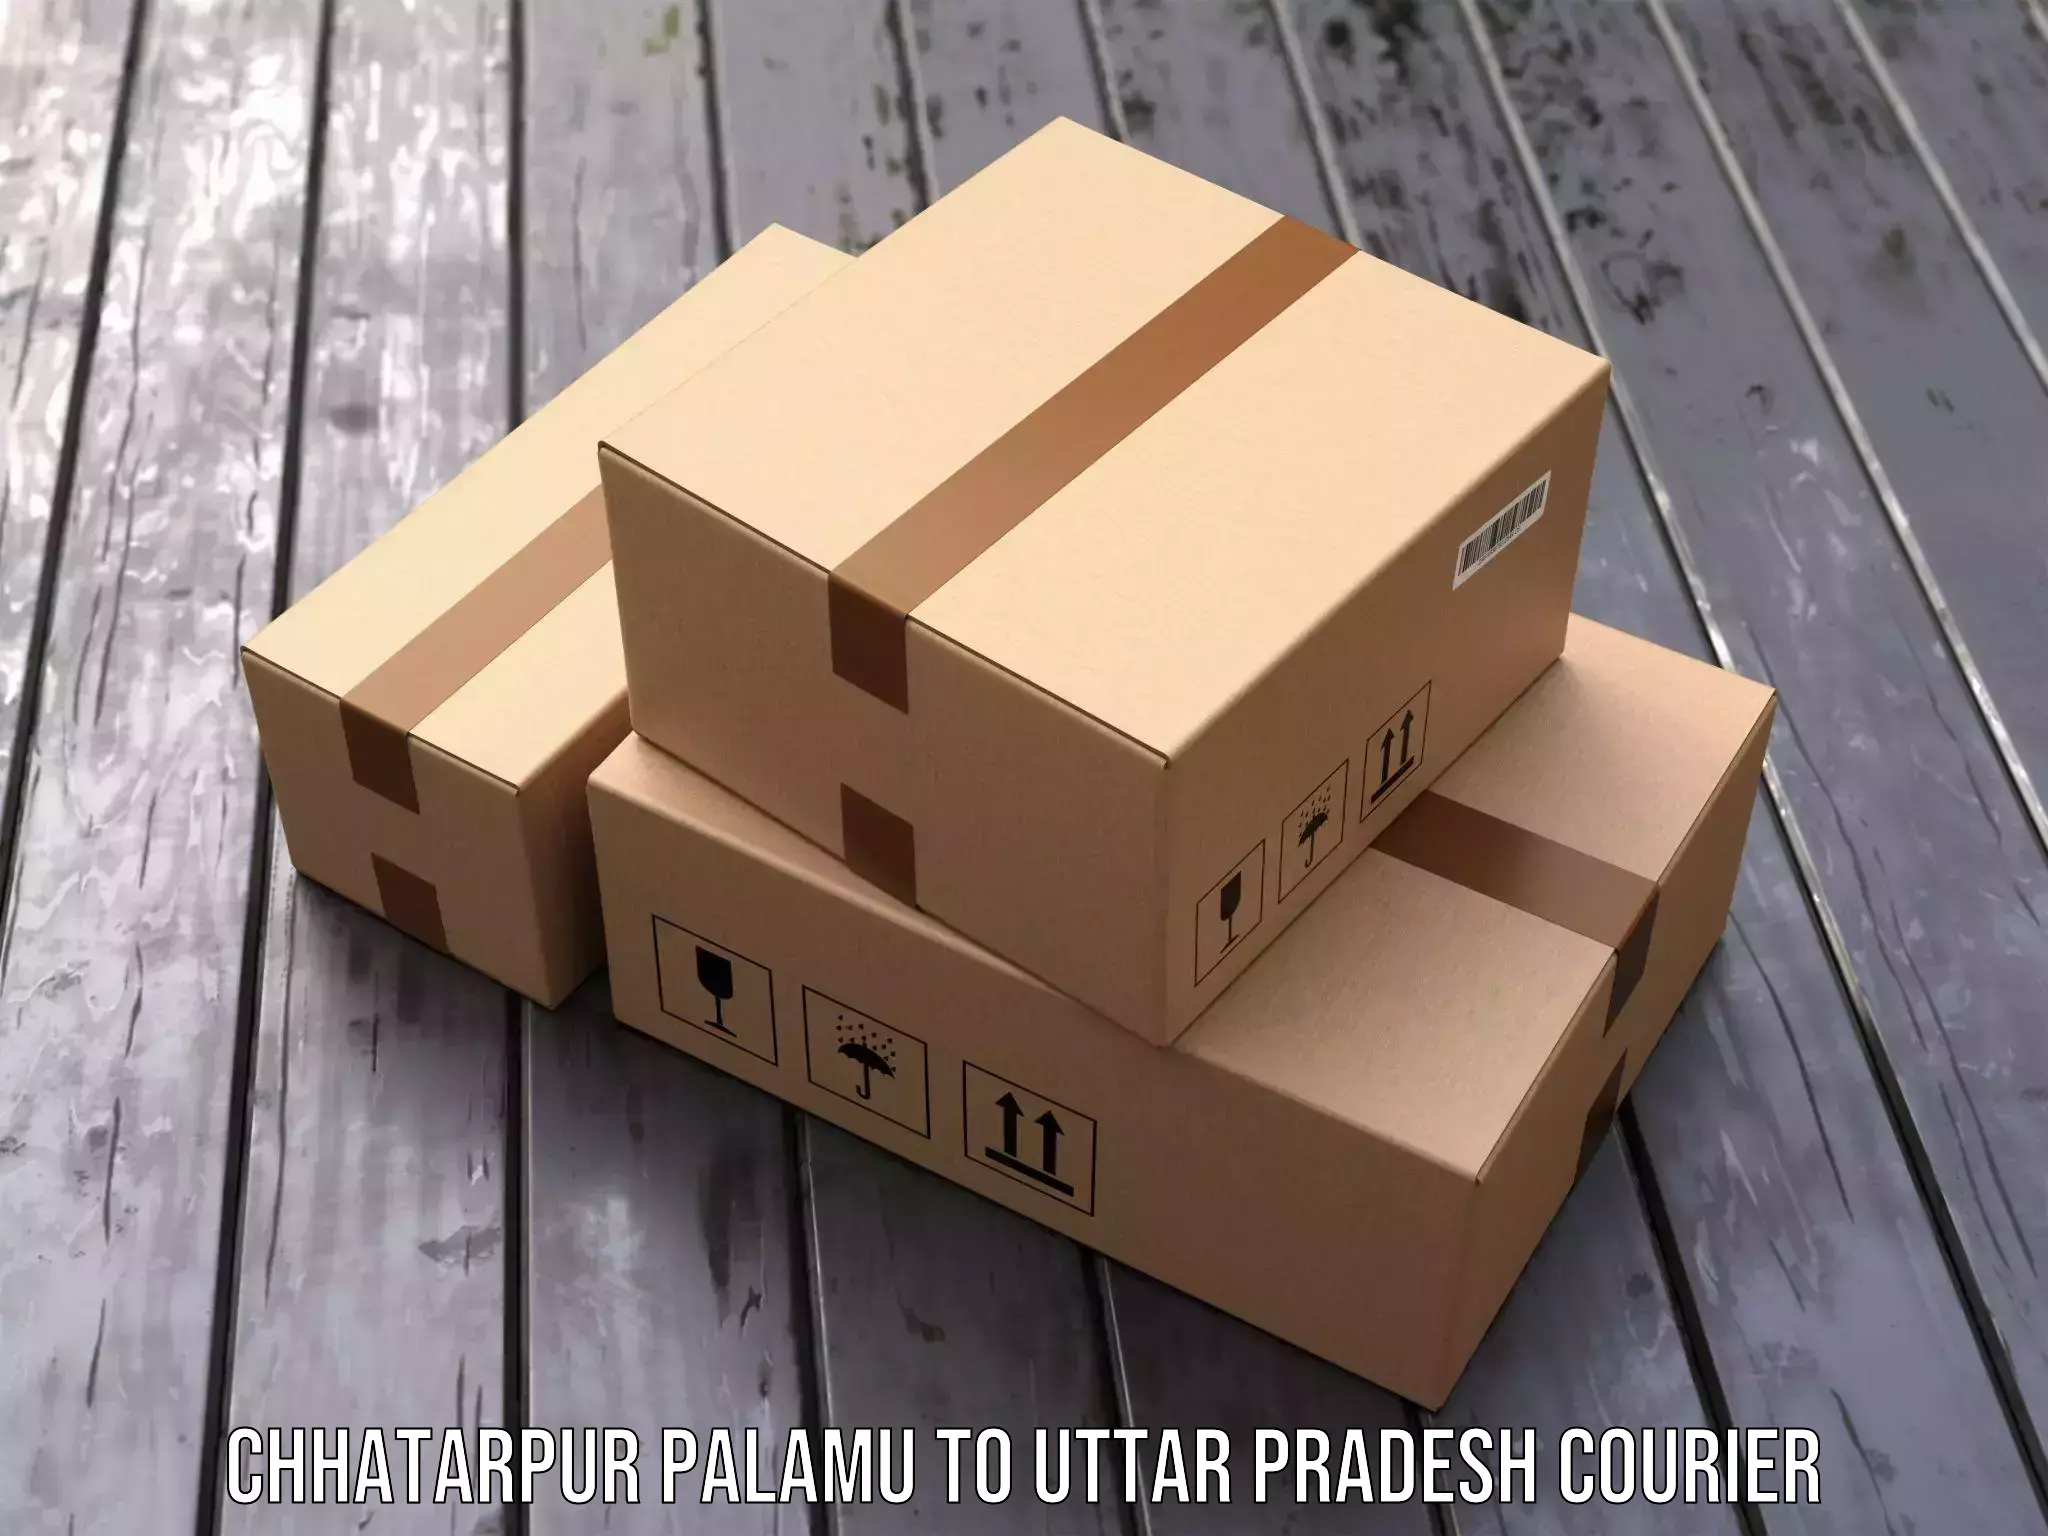 Efficient freight service Chhatarpur Palamu to Prayagraj